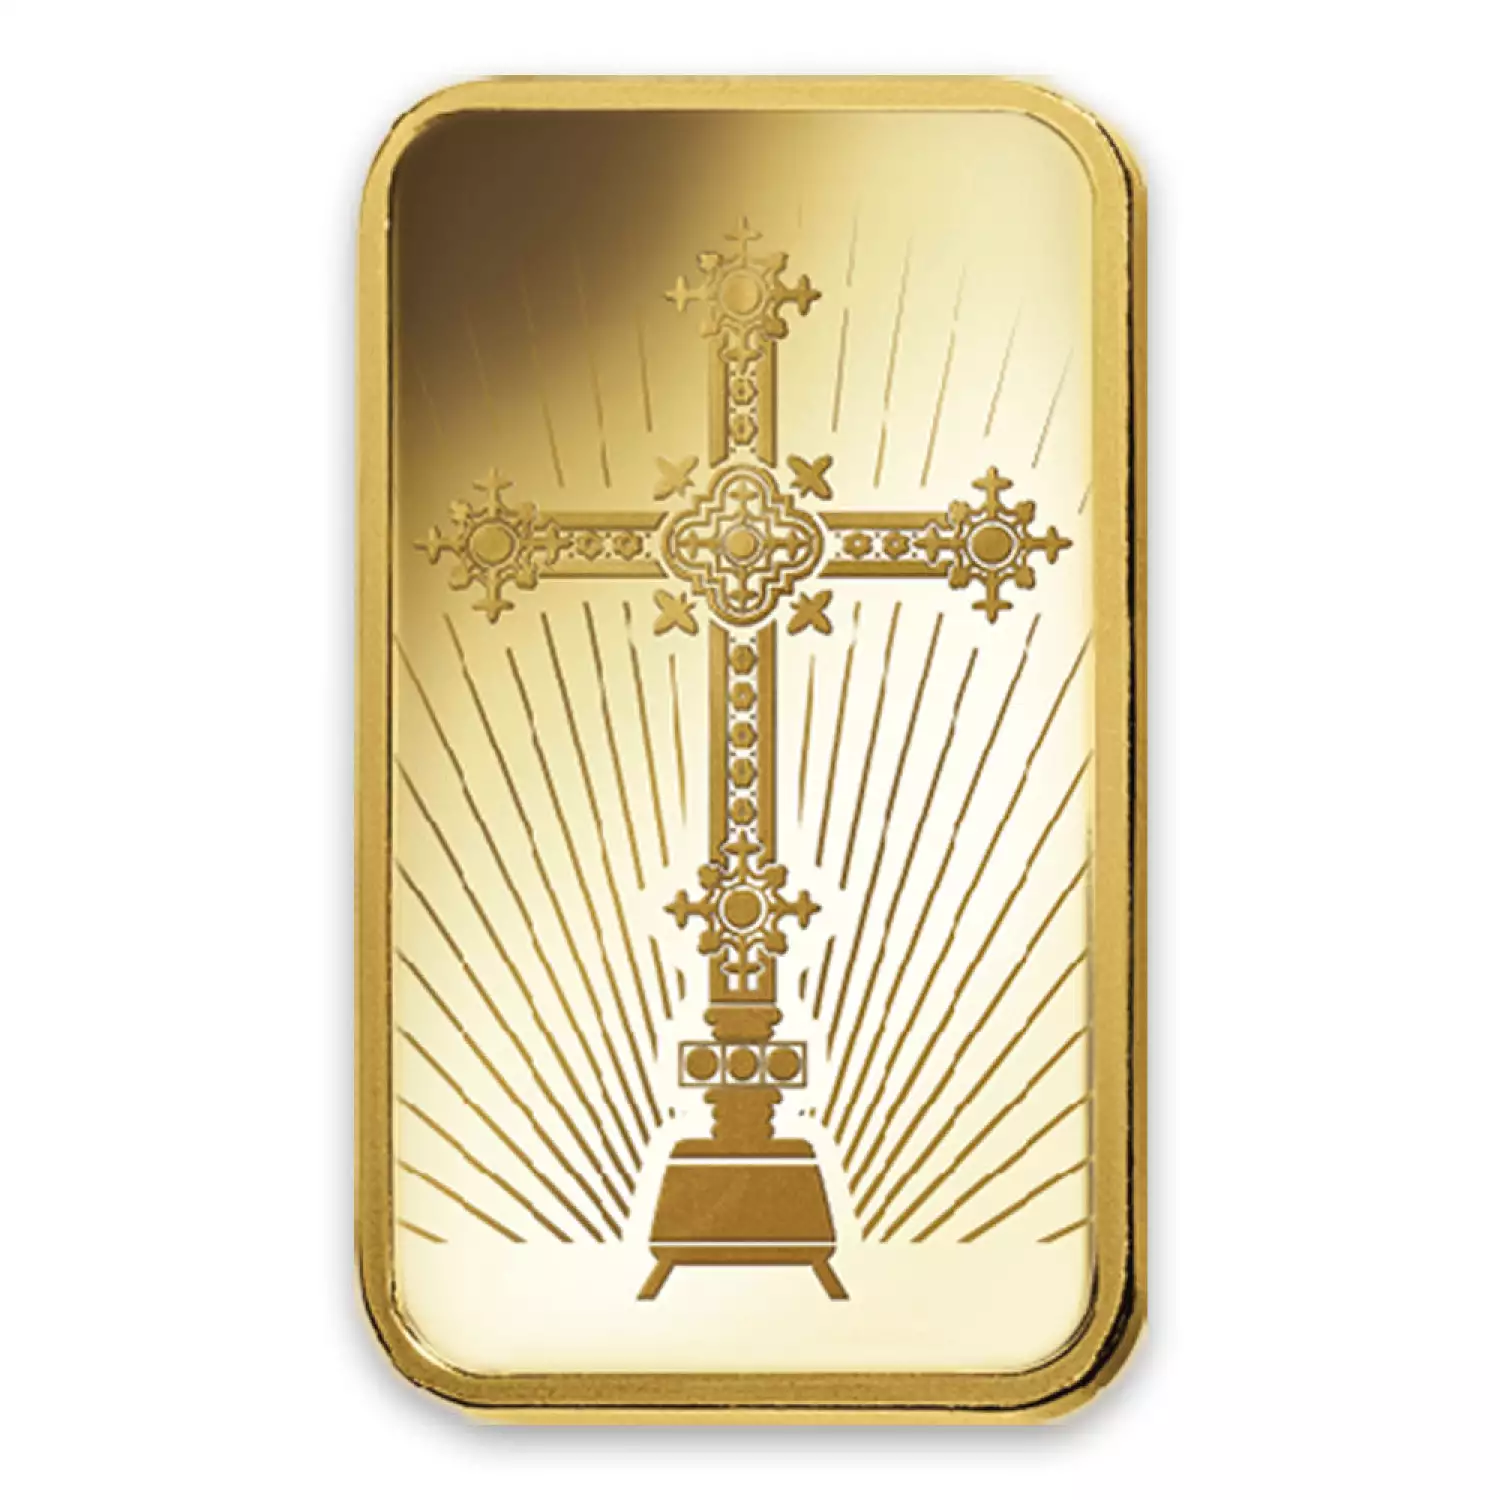 10g PAMP Gold Bar - Romanesque Cross (2)